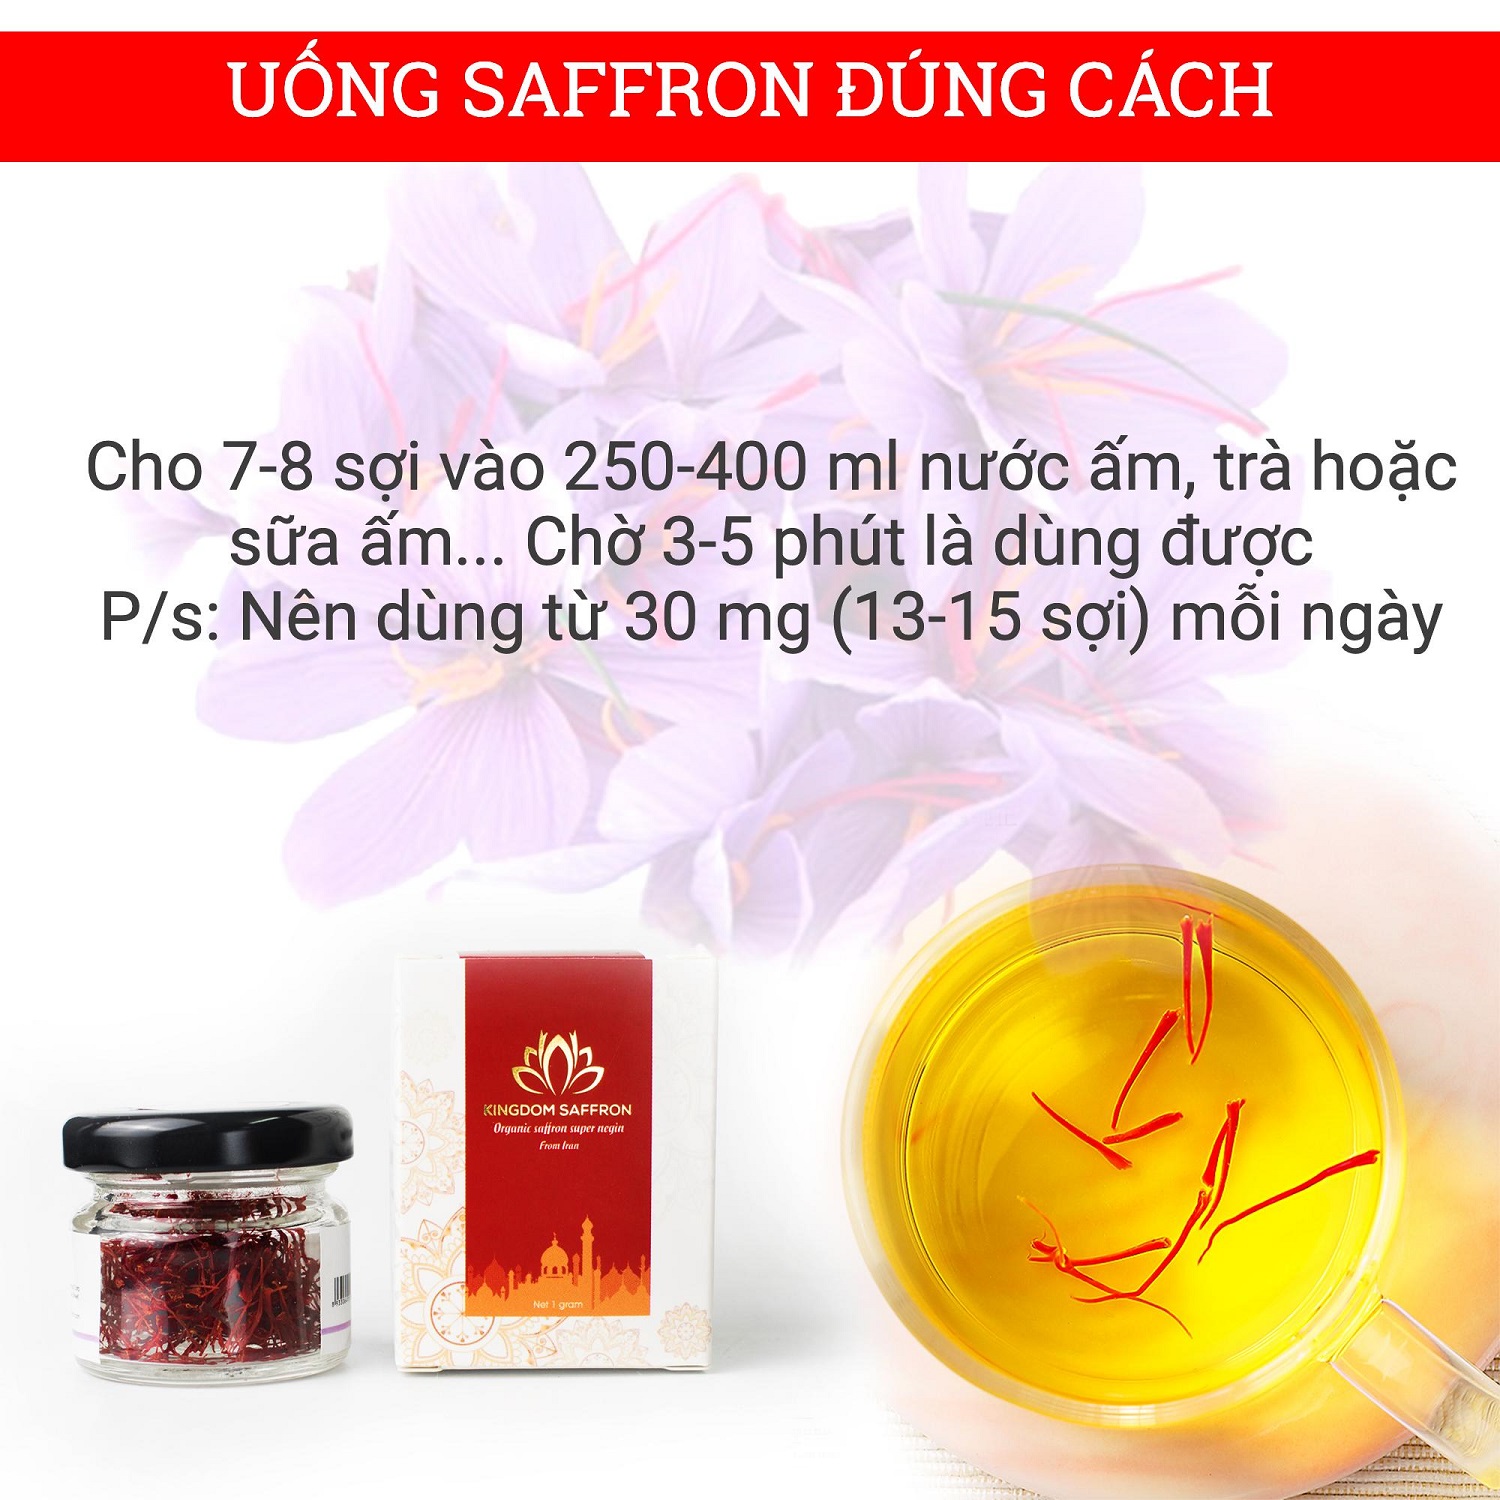 Combo 5 hộp (hộp/1gr) nhụy hoa nghệ tây Kingdom Herb, saffron Iran chính hãng super negin thượng hạng (Tặng hộp saffron mật ong 40g và bình nước thủy tinh)